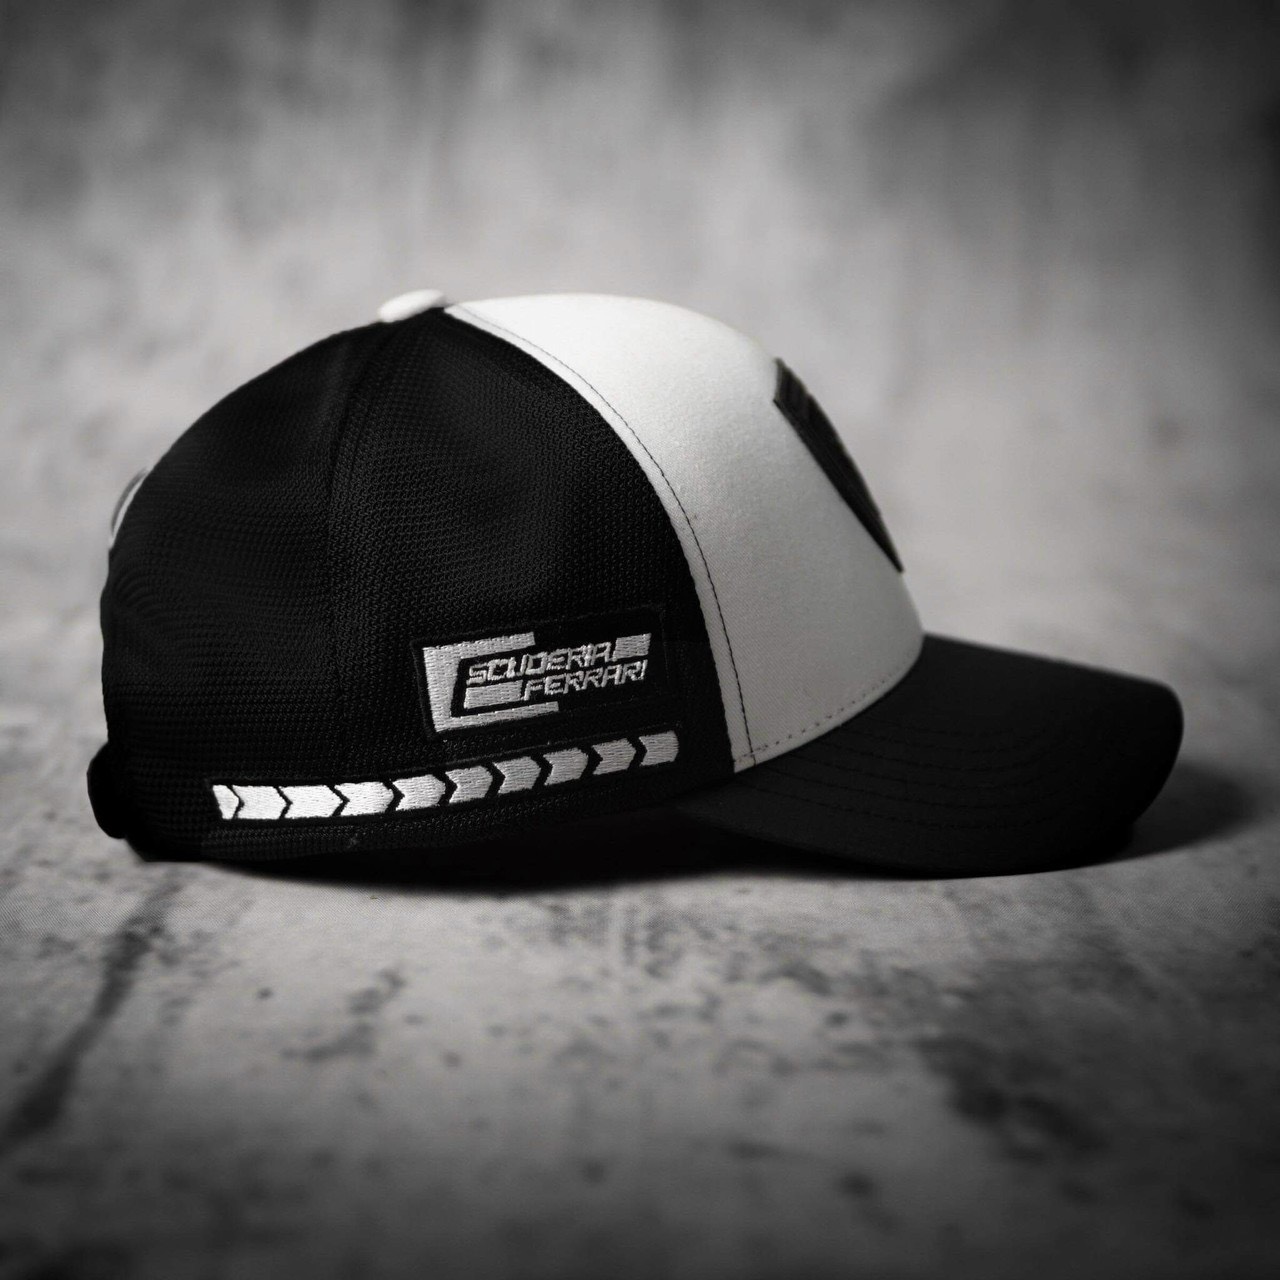 Mũ nón thời trang cao cấp logo ngựa đen màu trắng phối lưới đen form đẹp cá tính